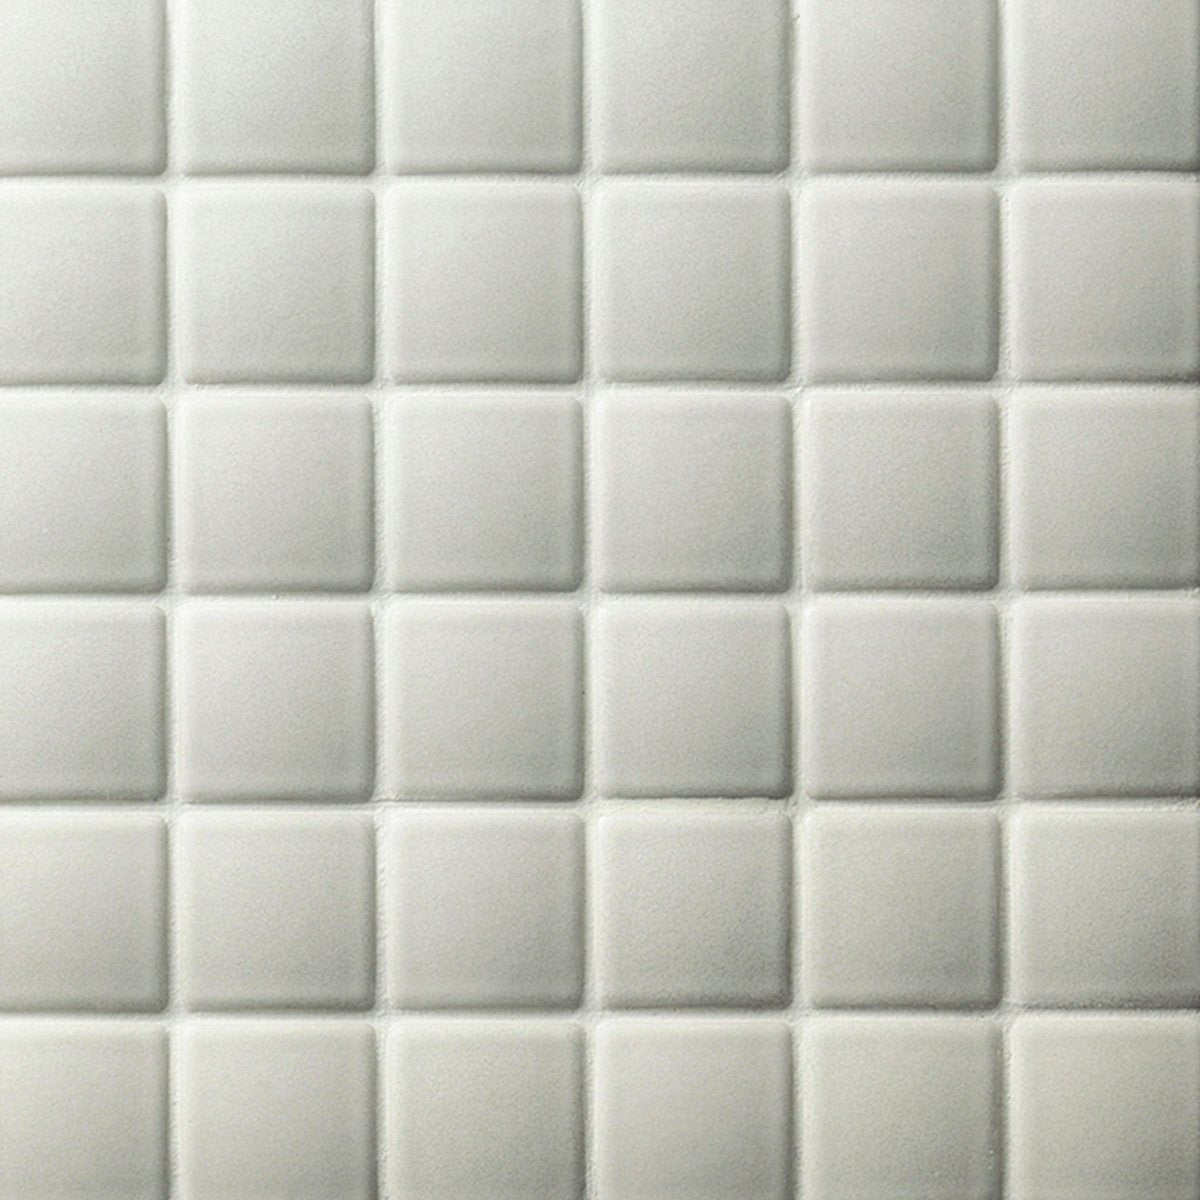 Madoka-R - Ceramic Mosaic